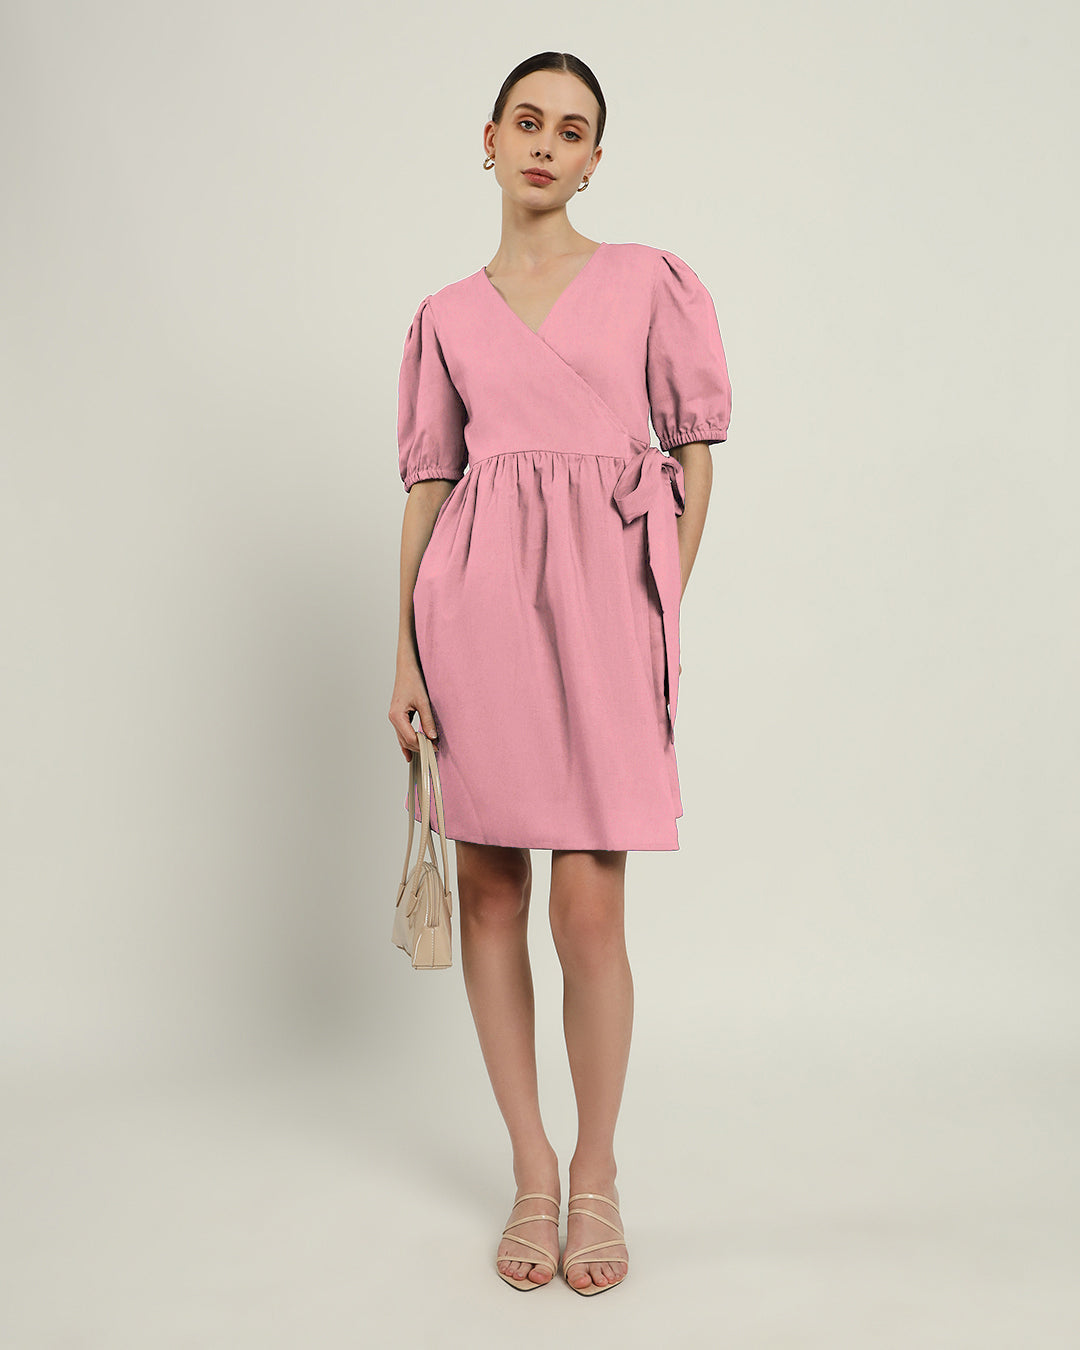 The Inzai Fondant Pink Dress